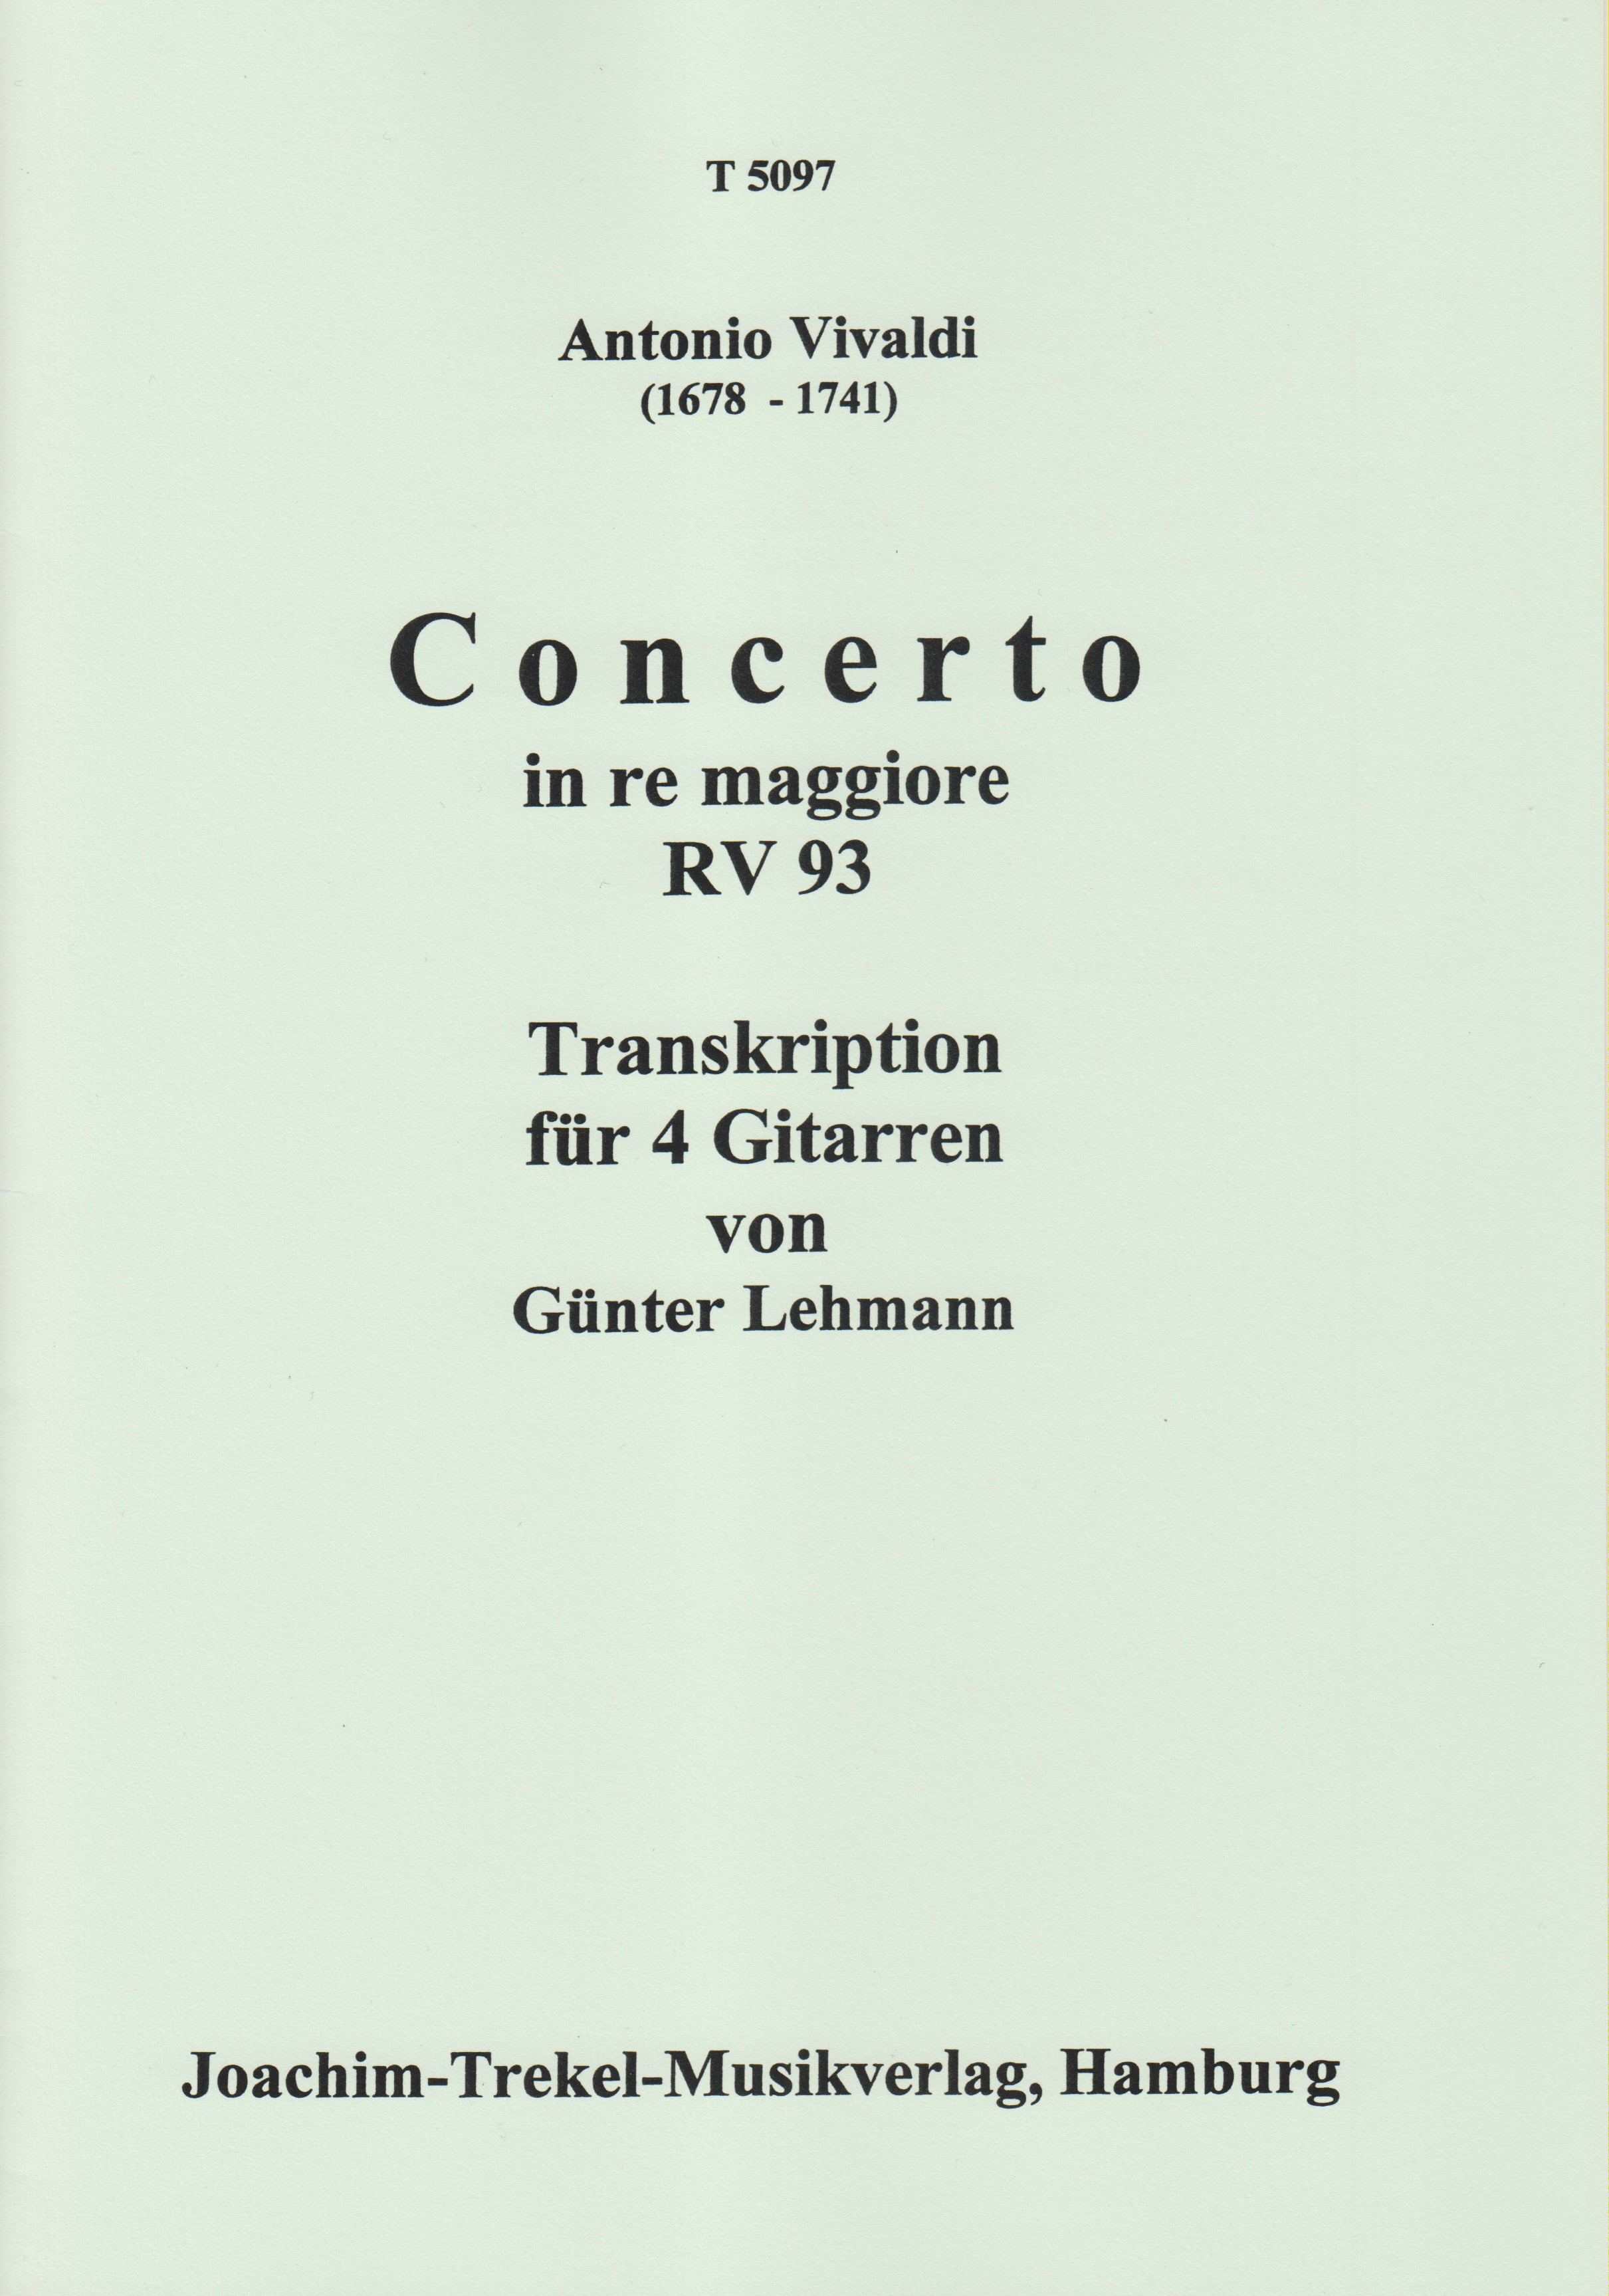 Concerto in re maggiore RV 93